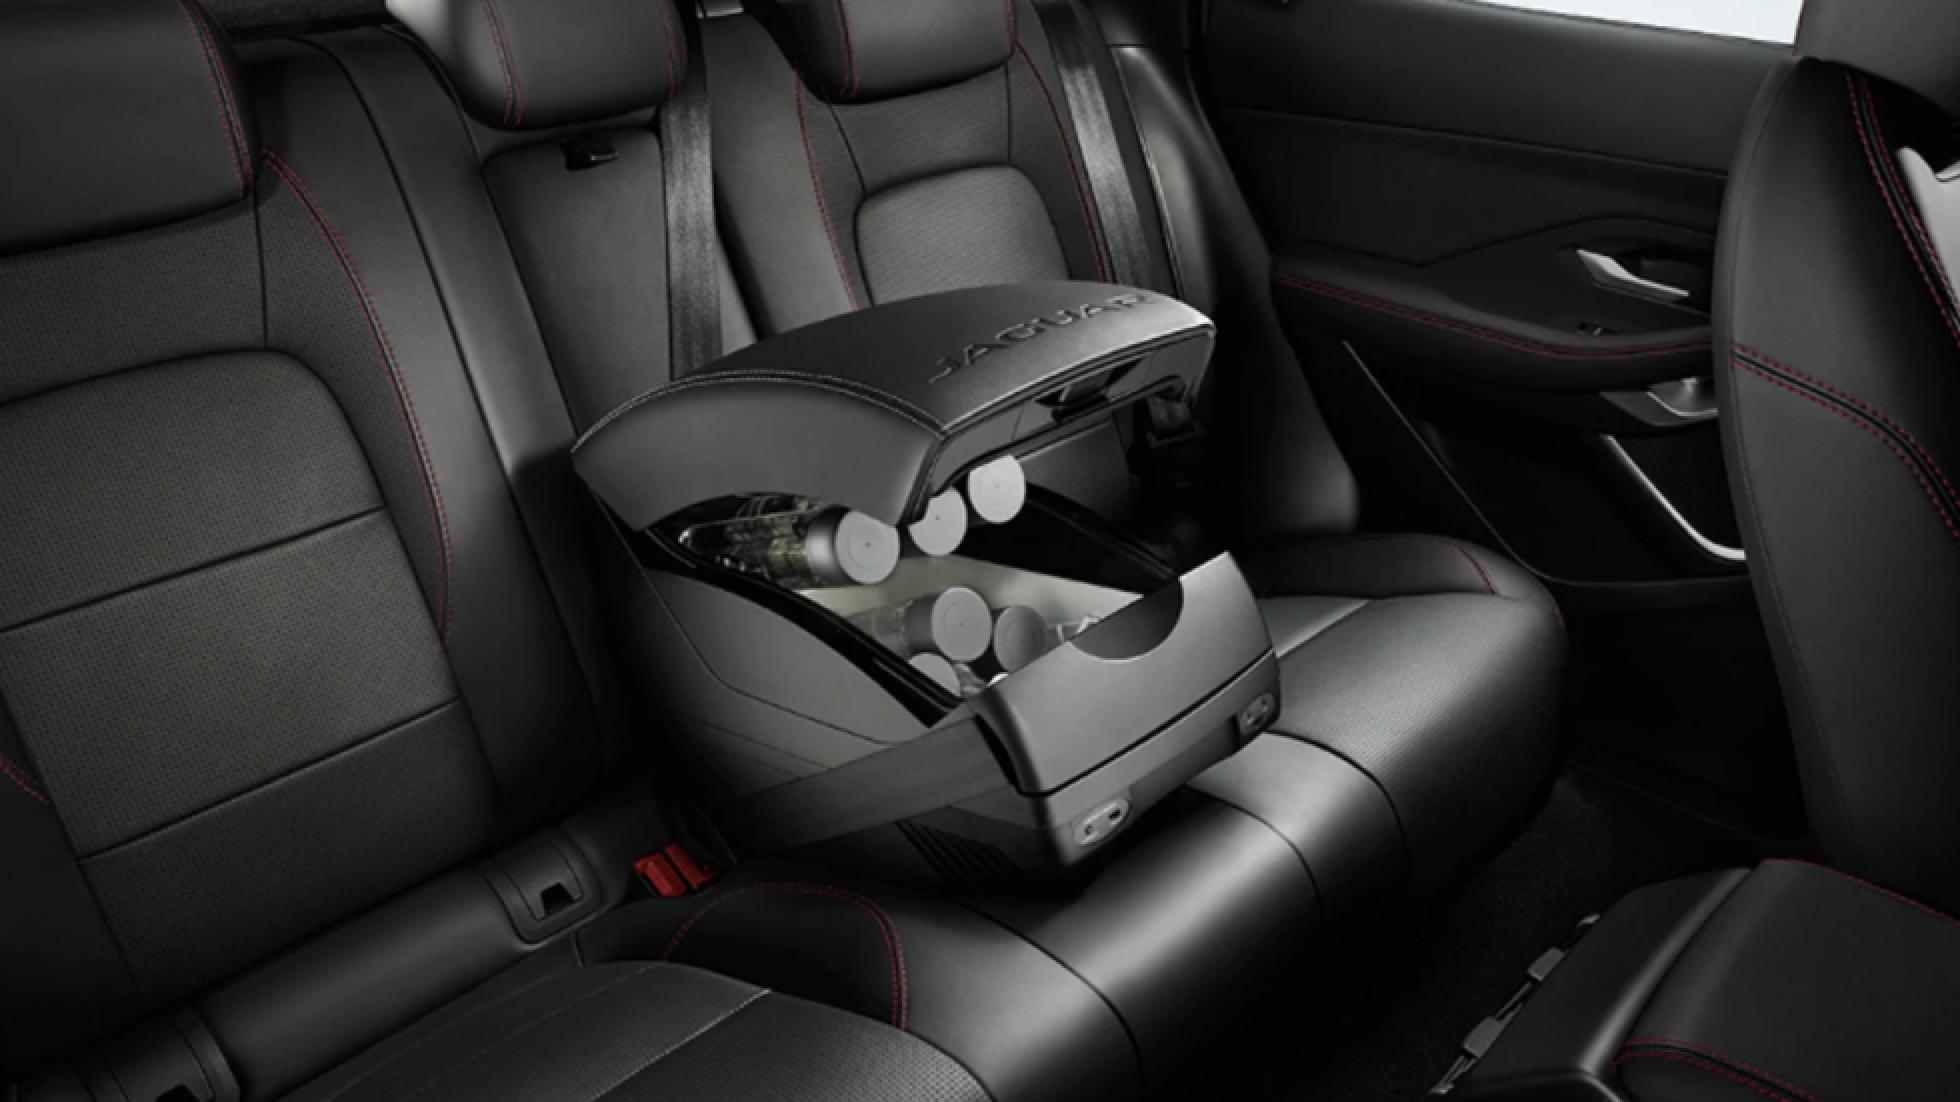 3. Jaguar F-Pace – Central armrest cooler/warmer